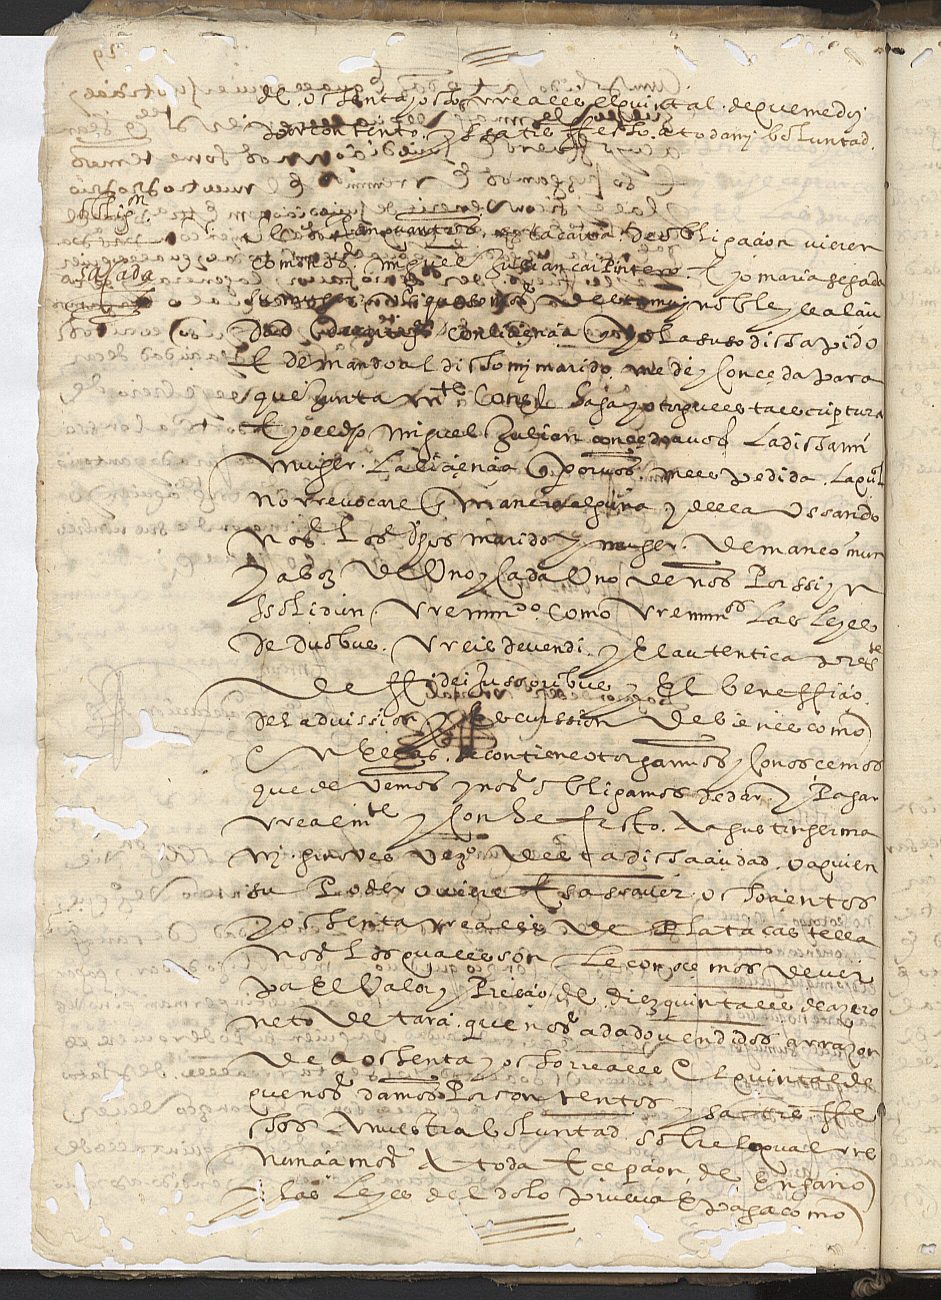 Obligación otorgada por Miguel Julián, carpintero y vecino de Cartagena, para pagar a Germán Genovés 880 reales.